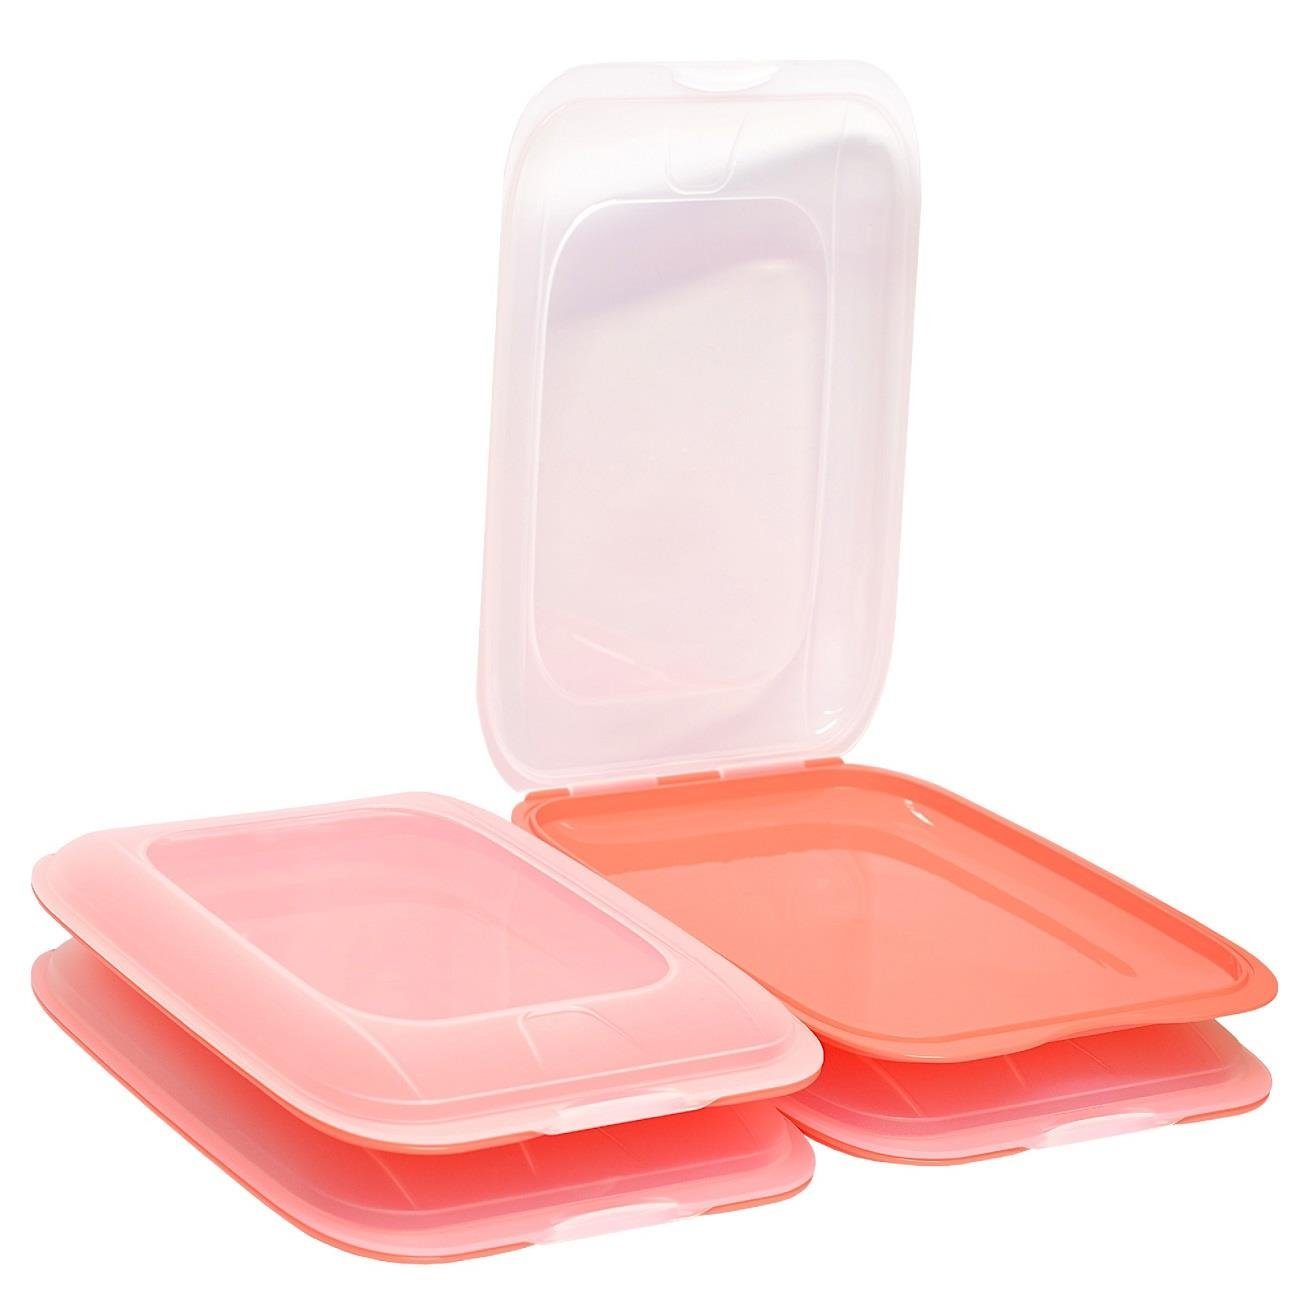 Engelland Frischhaltedose Aufschnittdosen, Aufschnittbox, PP-Kunststoff,  BPA-frei, (Vorteils-Set, 4-tlg., mit transparentem Deckel), stapelbar,  platzsparend, Ordnung im Kühlschrank, Organizer, Stapelbox